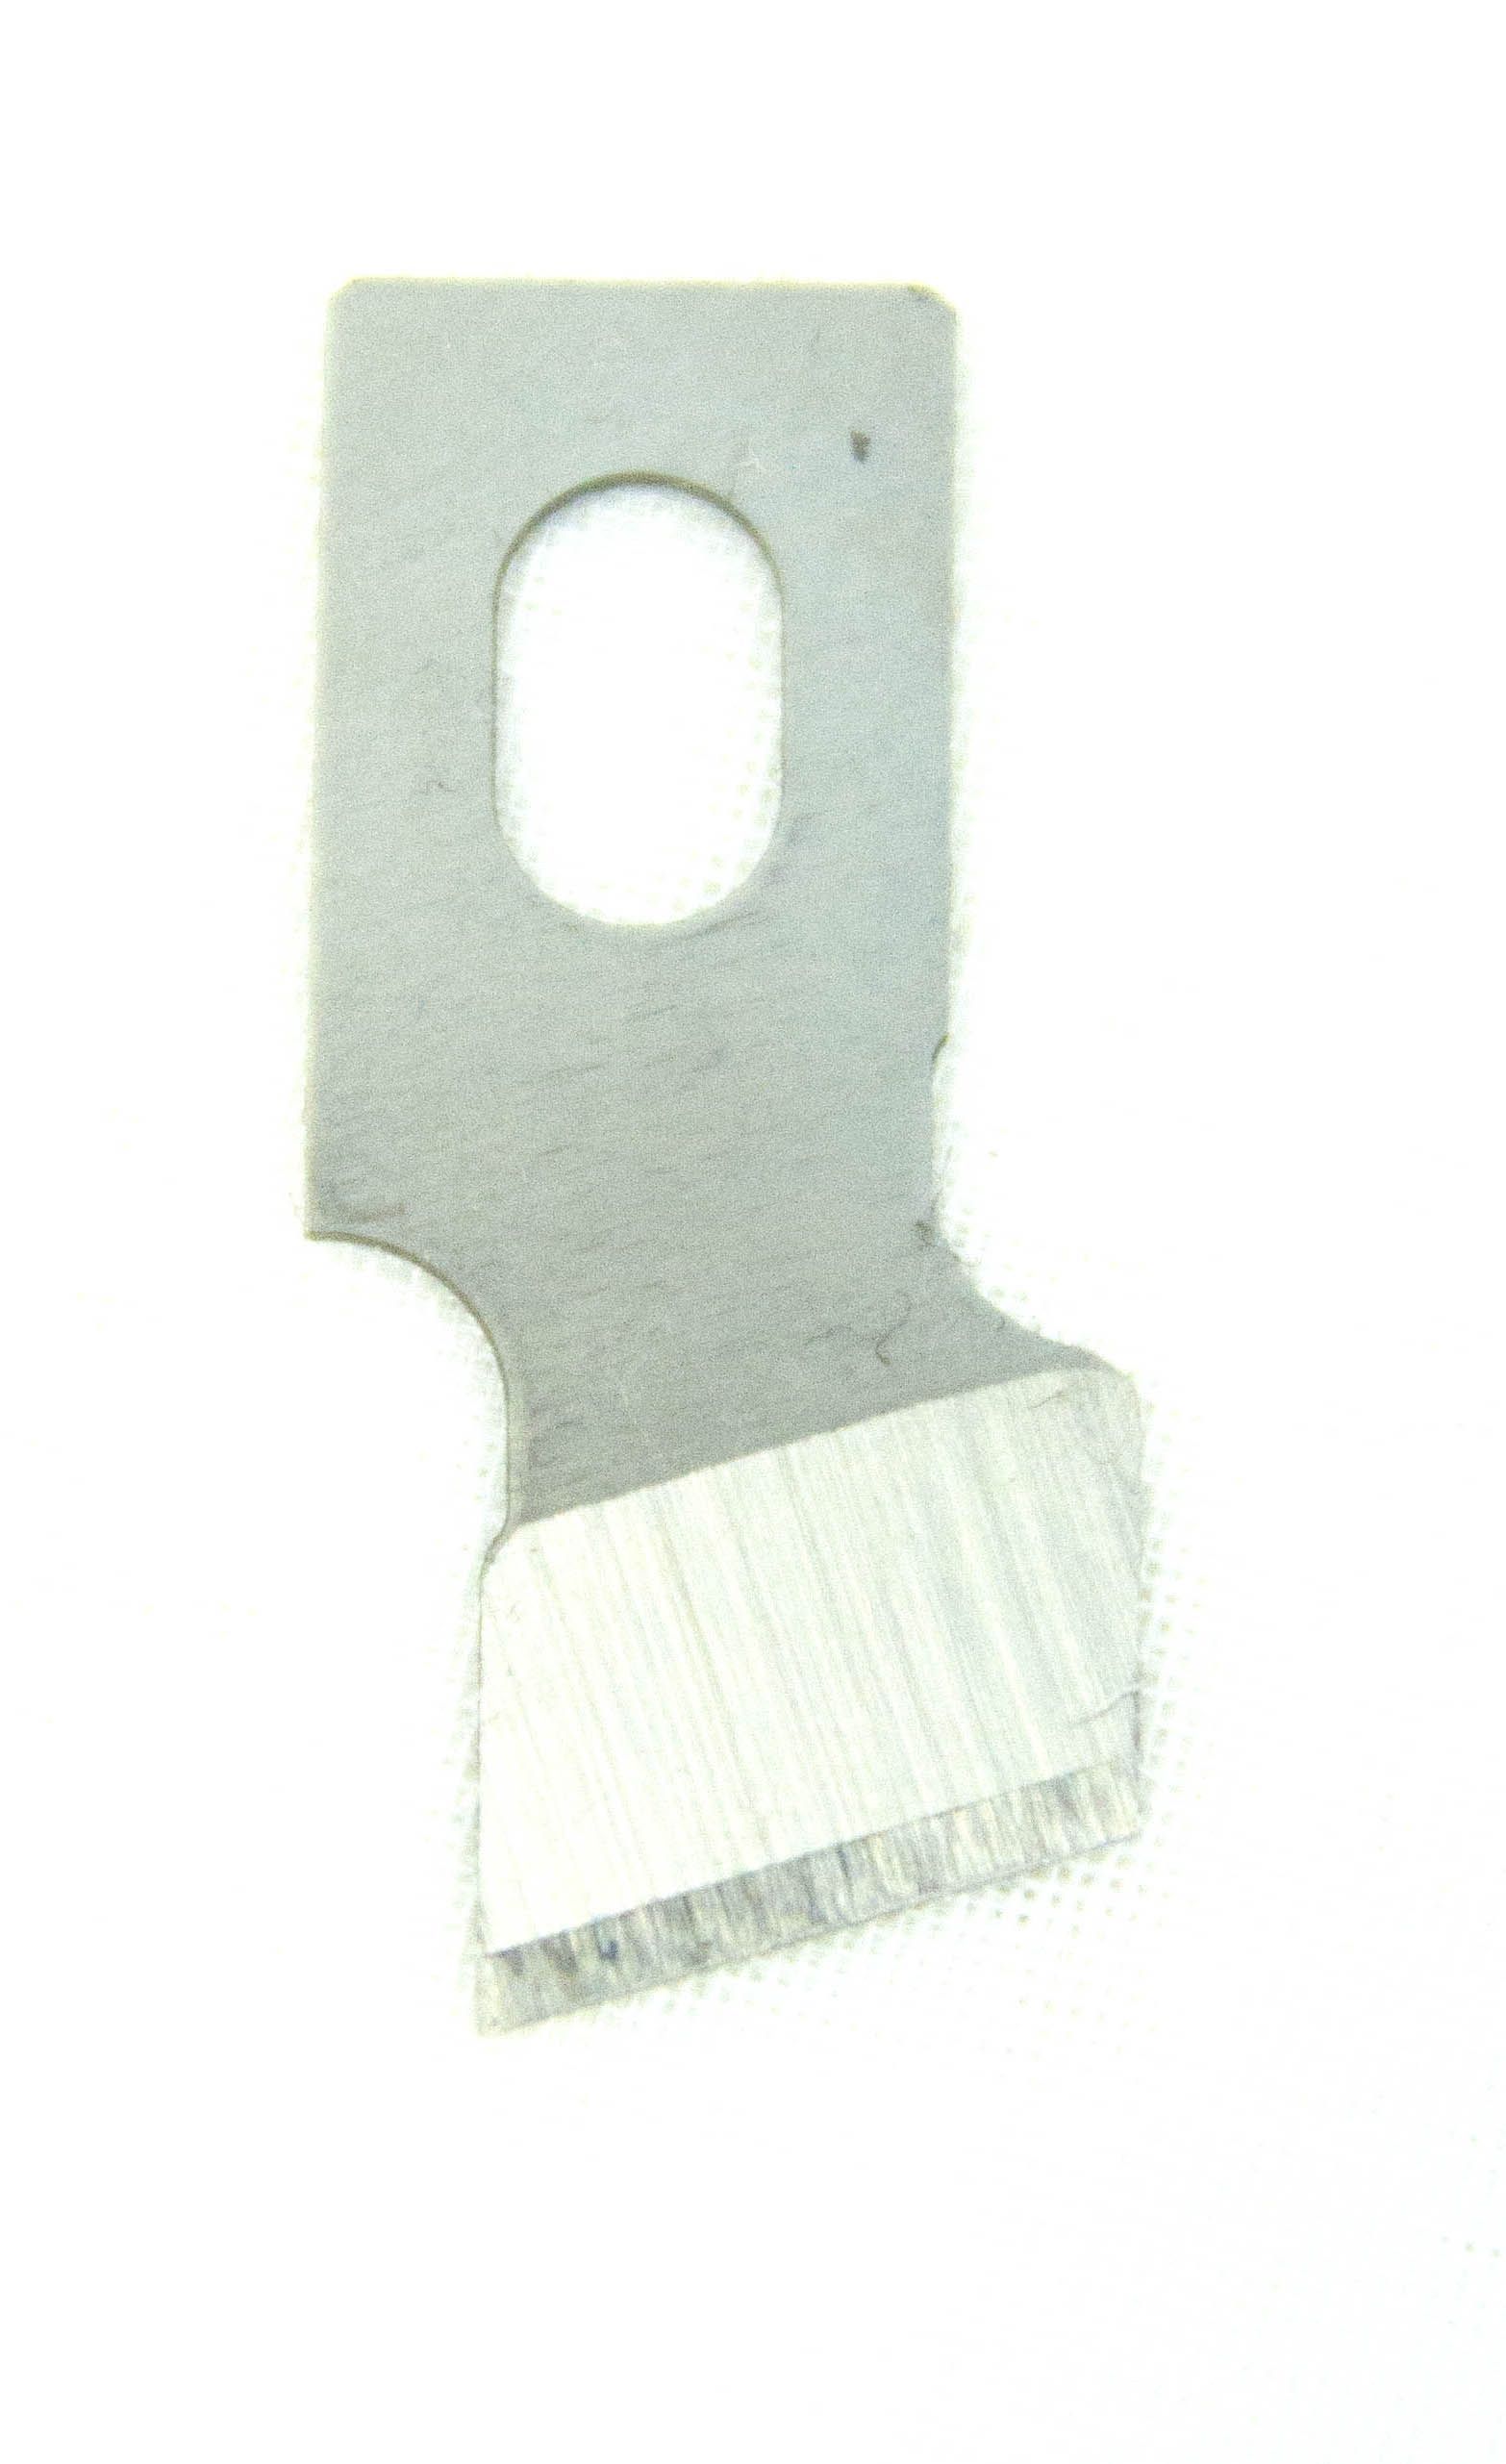 Каталог Нож прорубной 13 мм (1/2) для петельной машины Текстиль Центр 